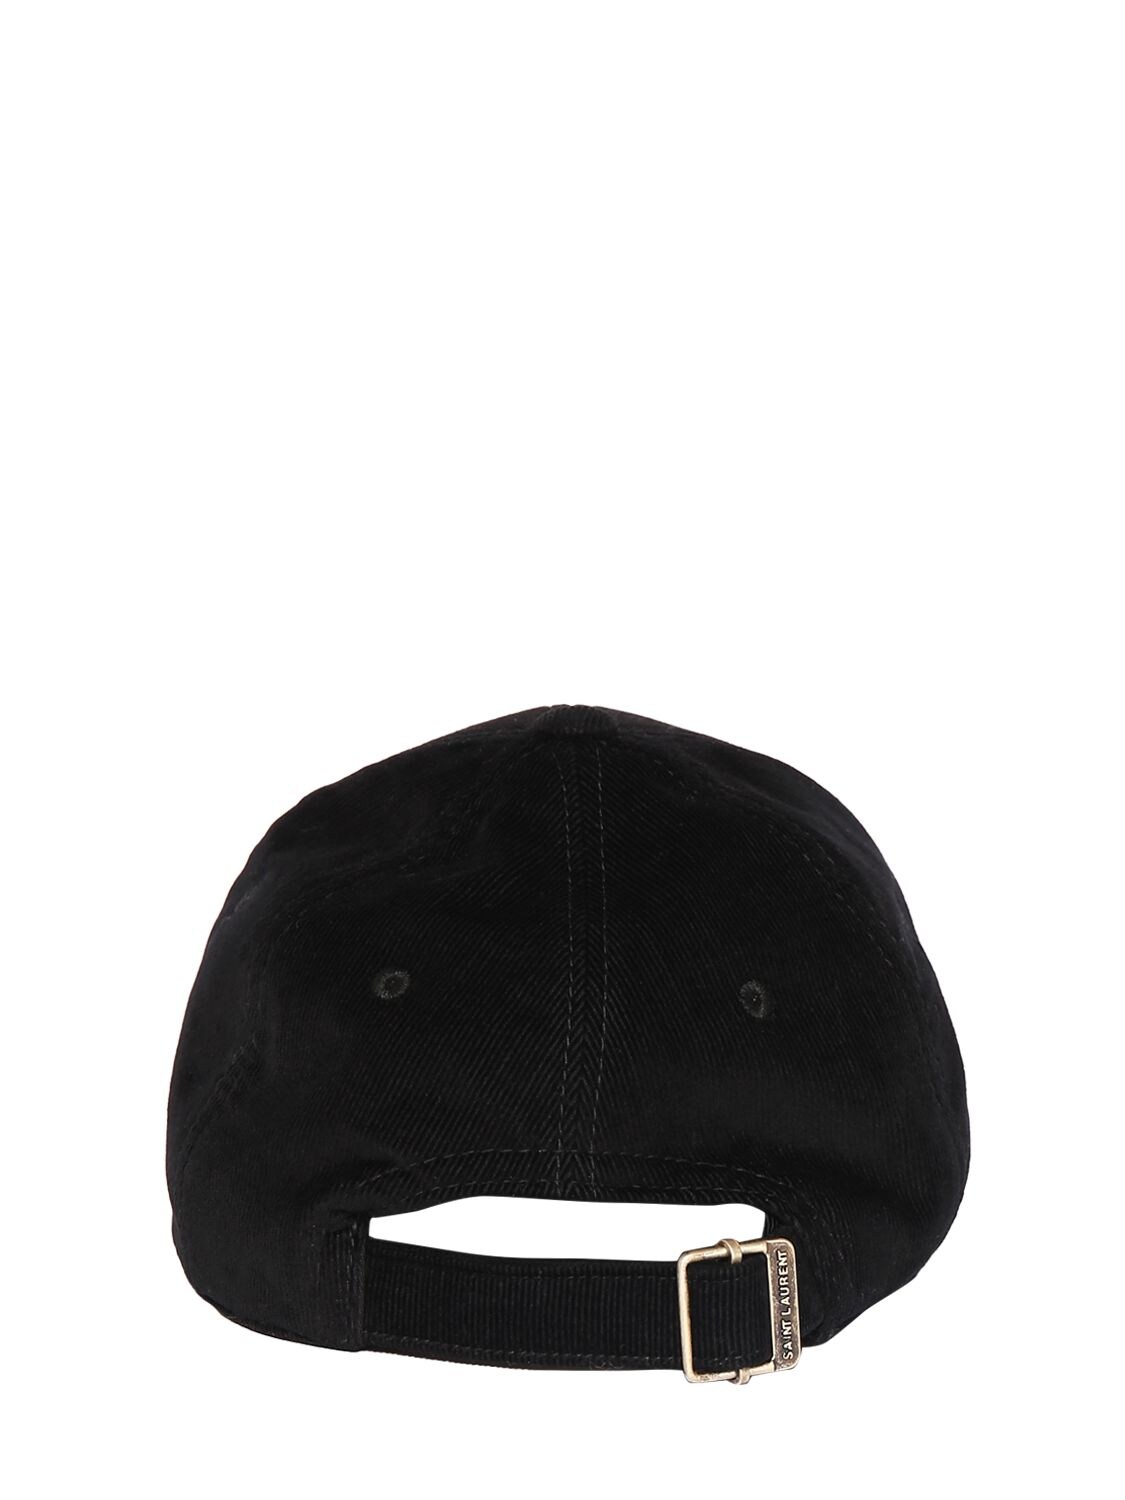 Shop Saint Laurent Vintage Cotton Cap In Black